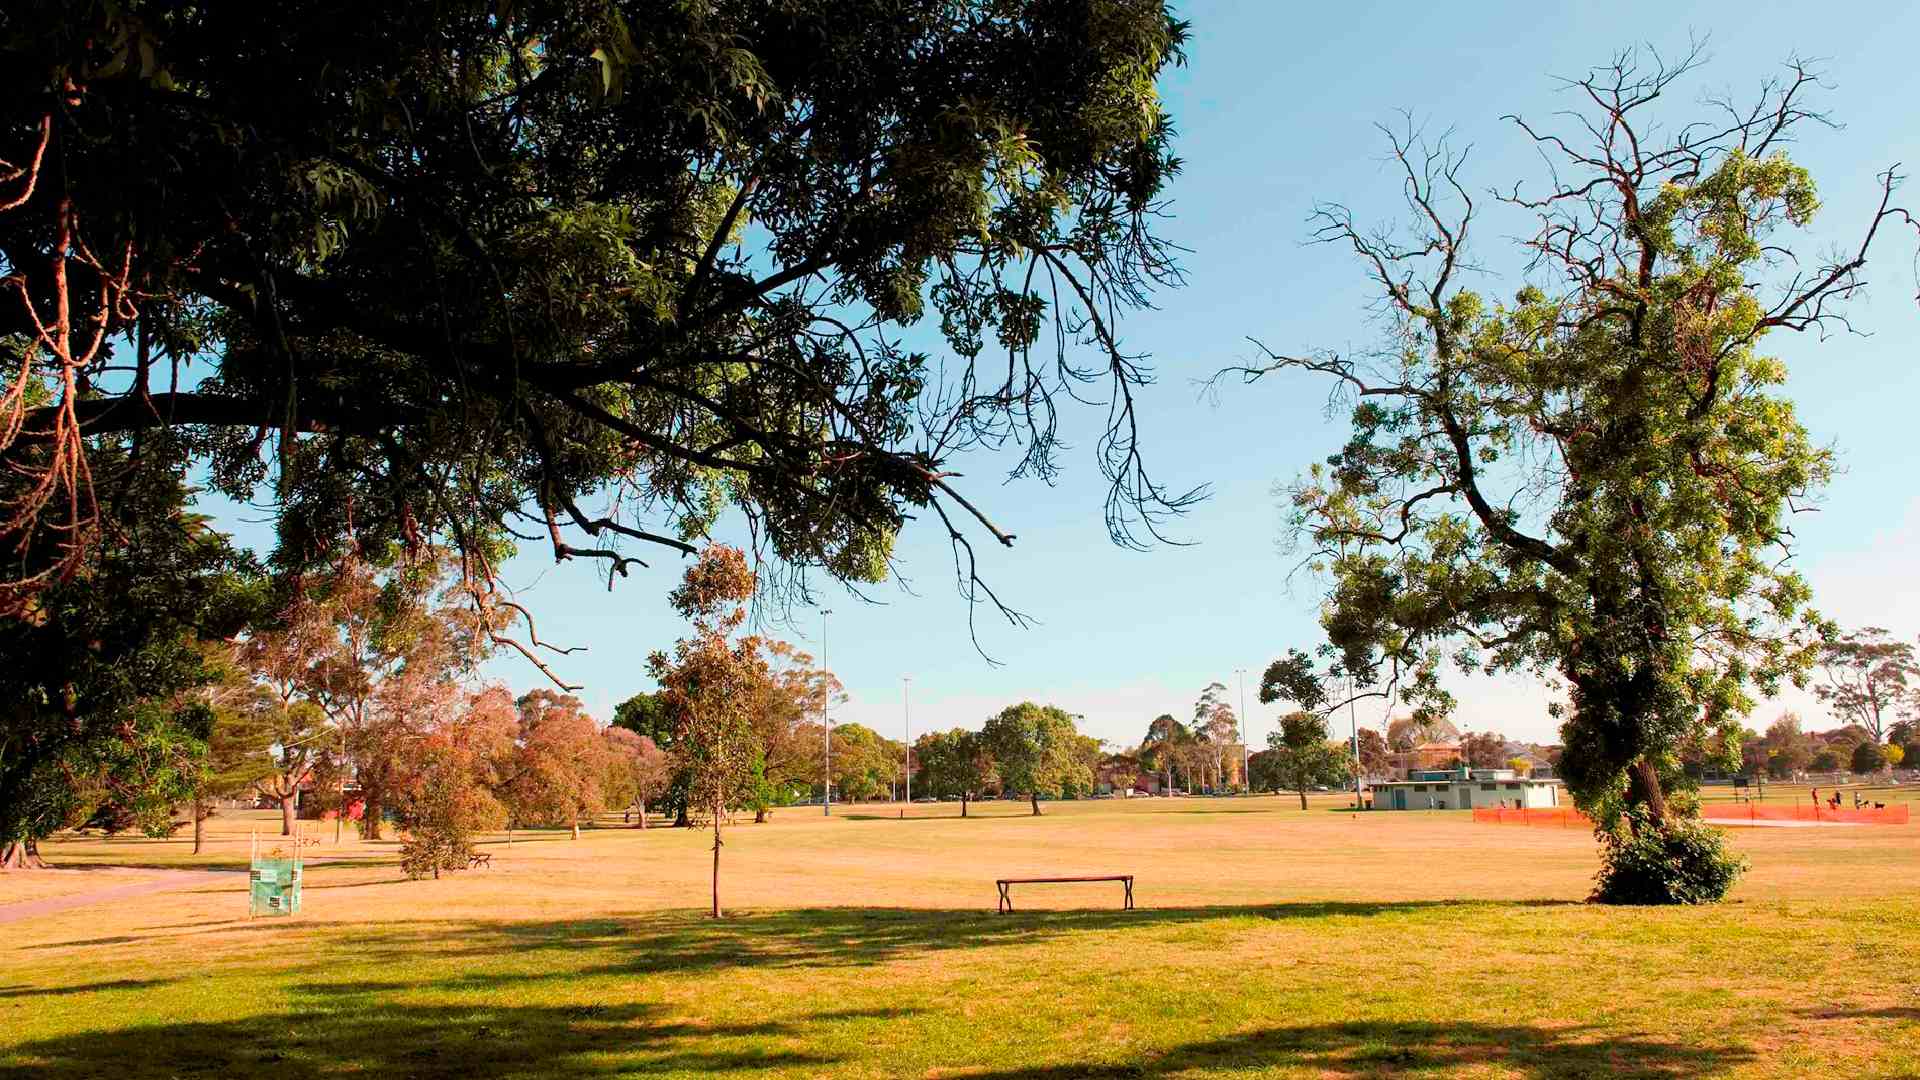 dog friendly parks trail leash off-leash Melbourne